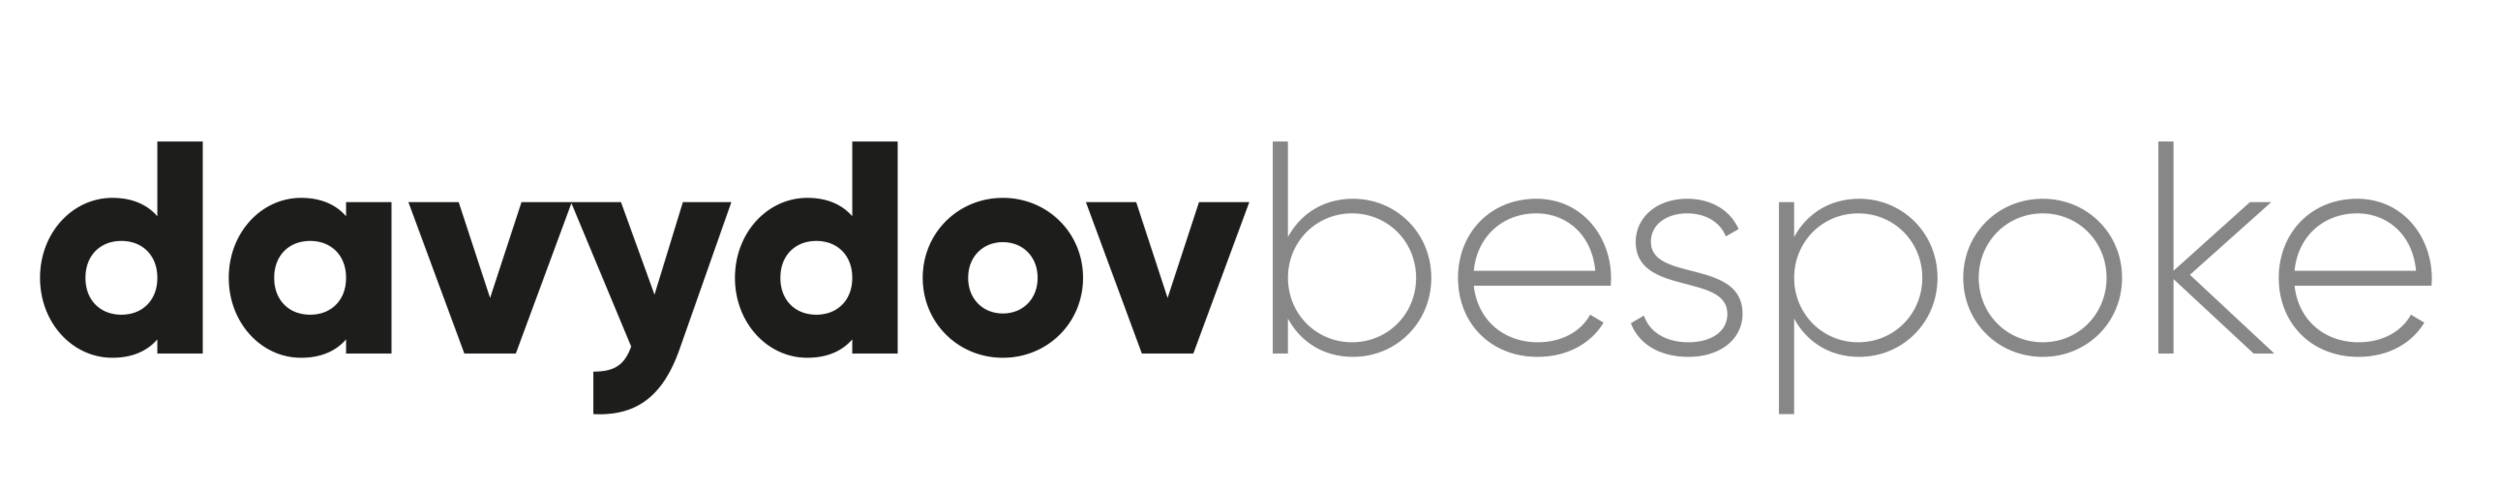 davydov-bespoke-logo.png